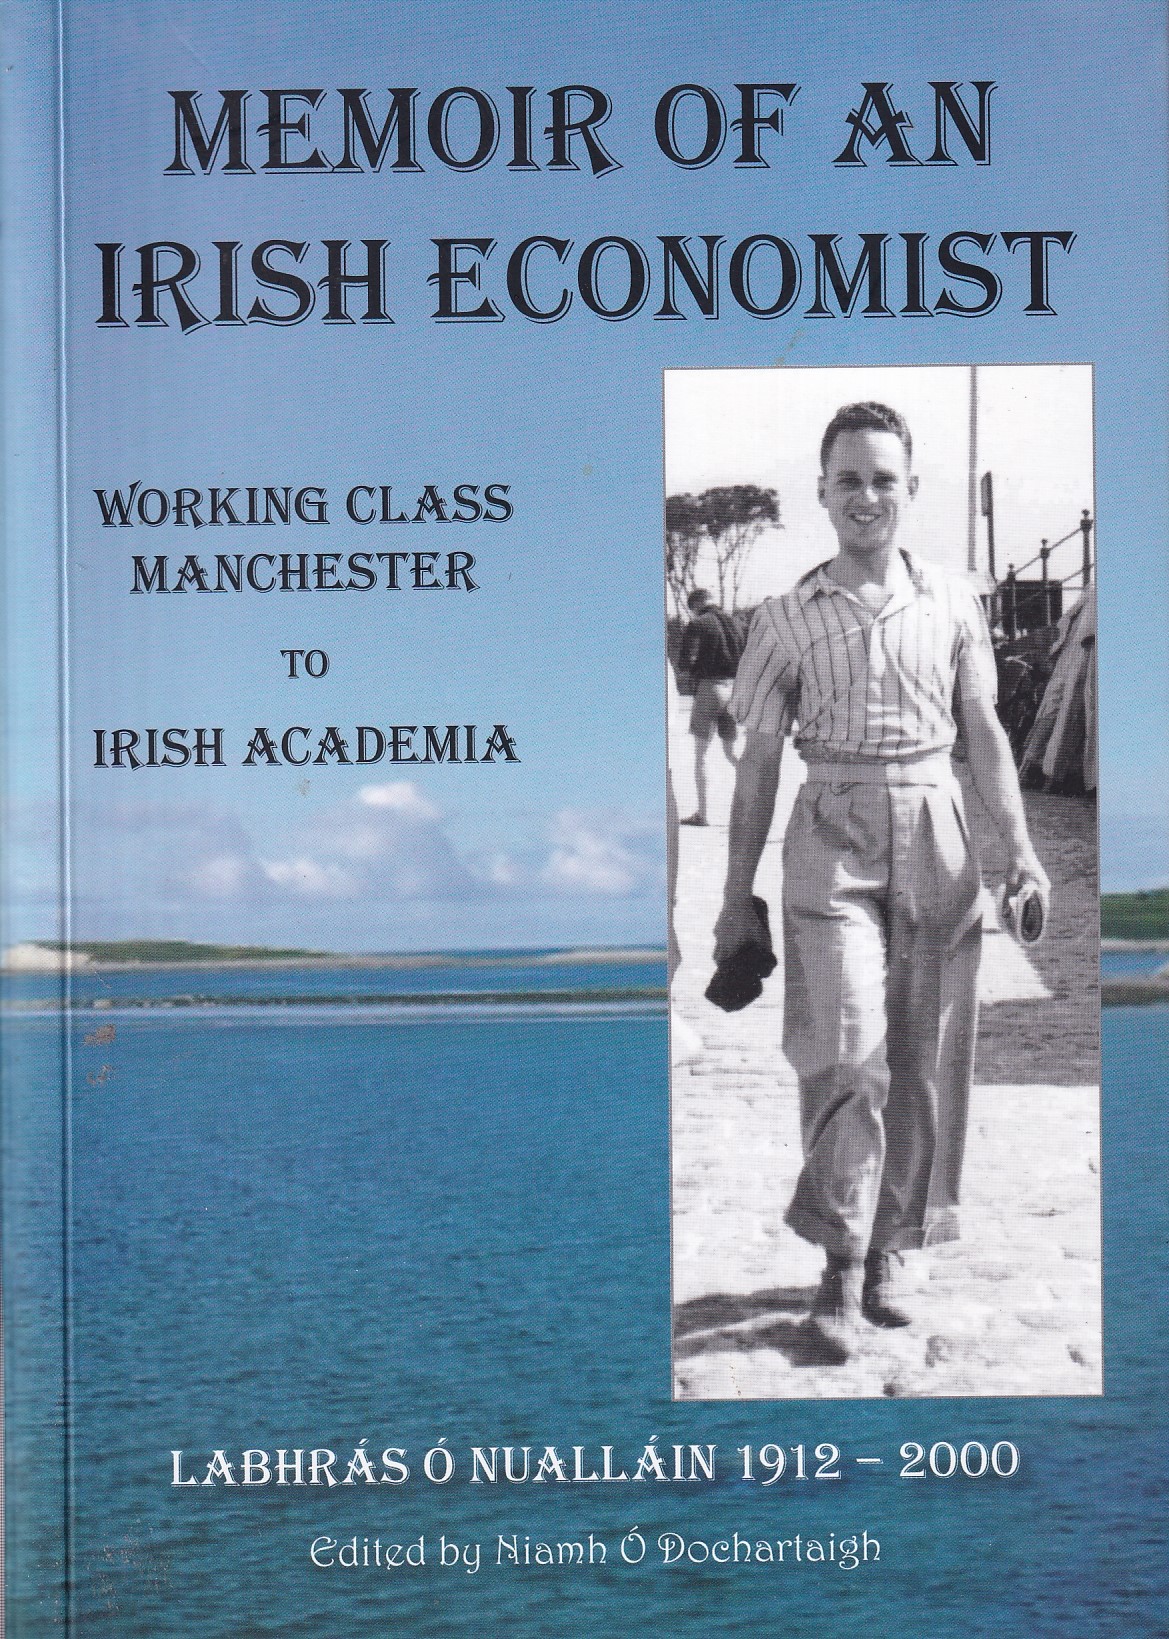 Memoir of an Irish Economist – Working Class Manchester to Irish Academia – Labhrás Ó Nualláin, 1912-2000 by Niamh Ó Dochartaigh